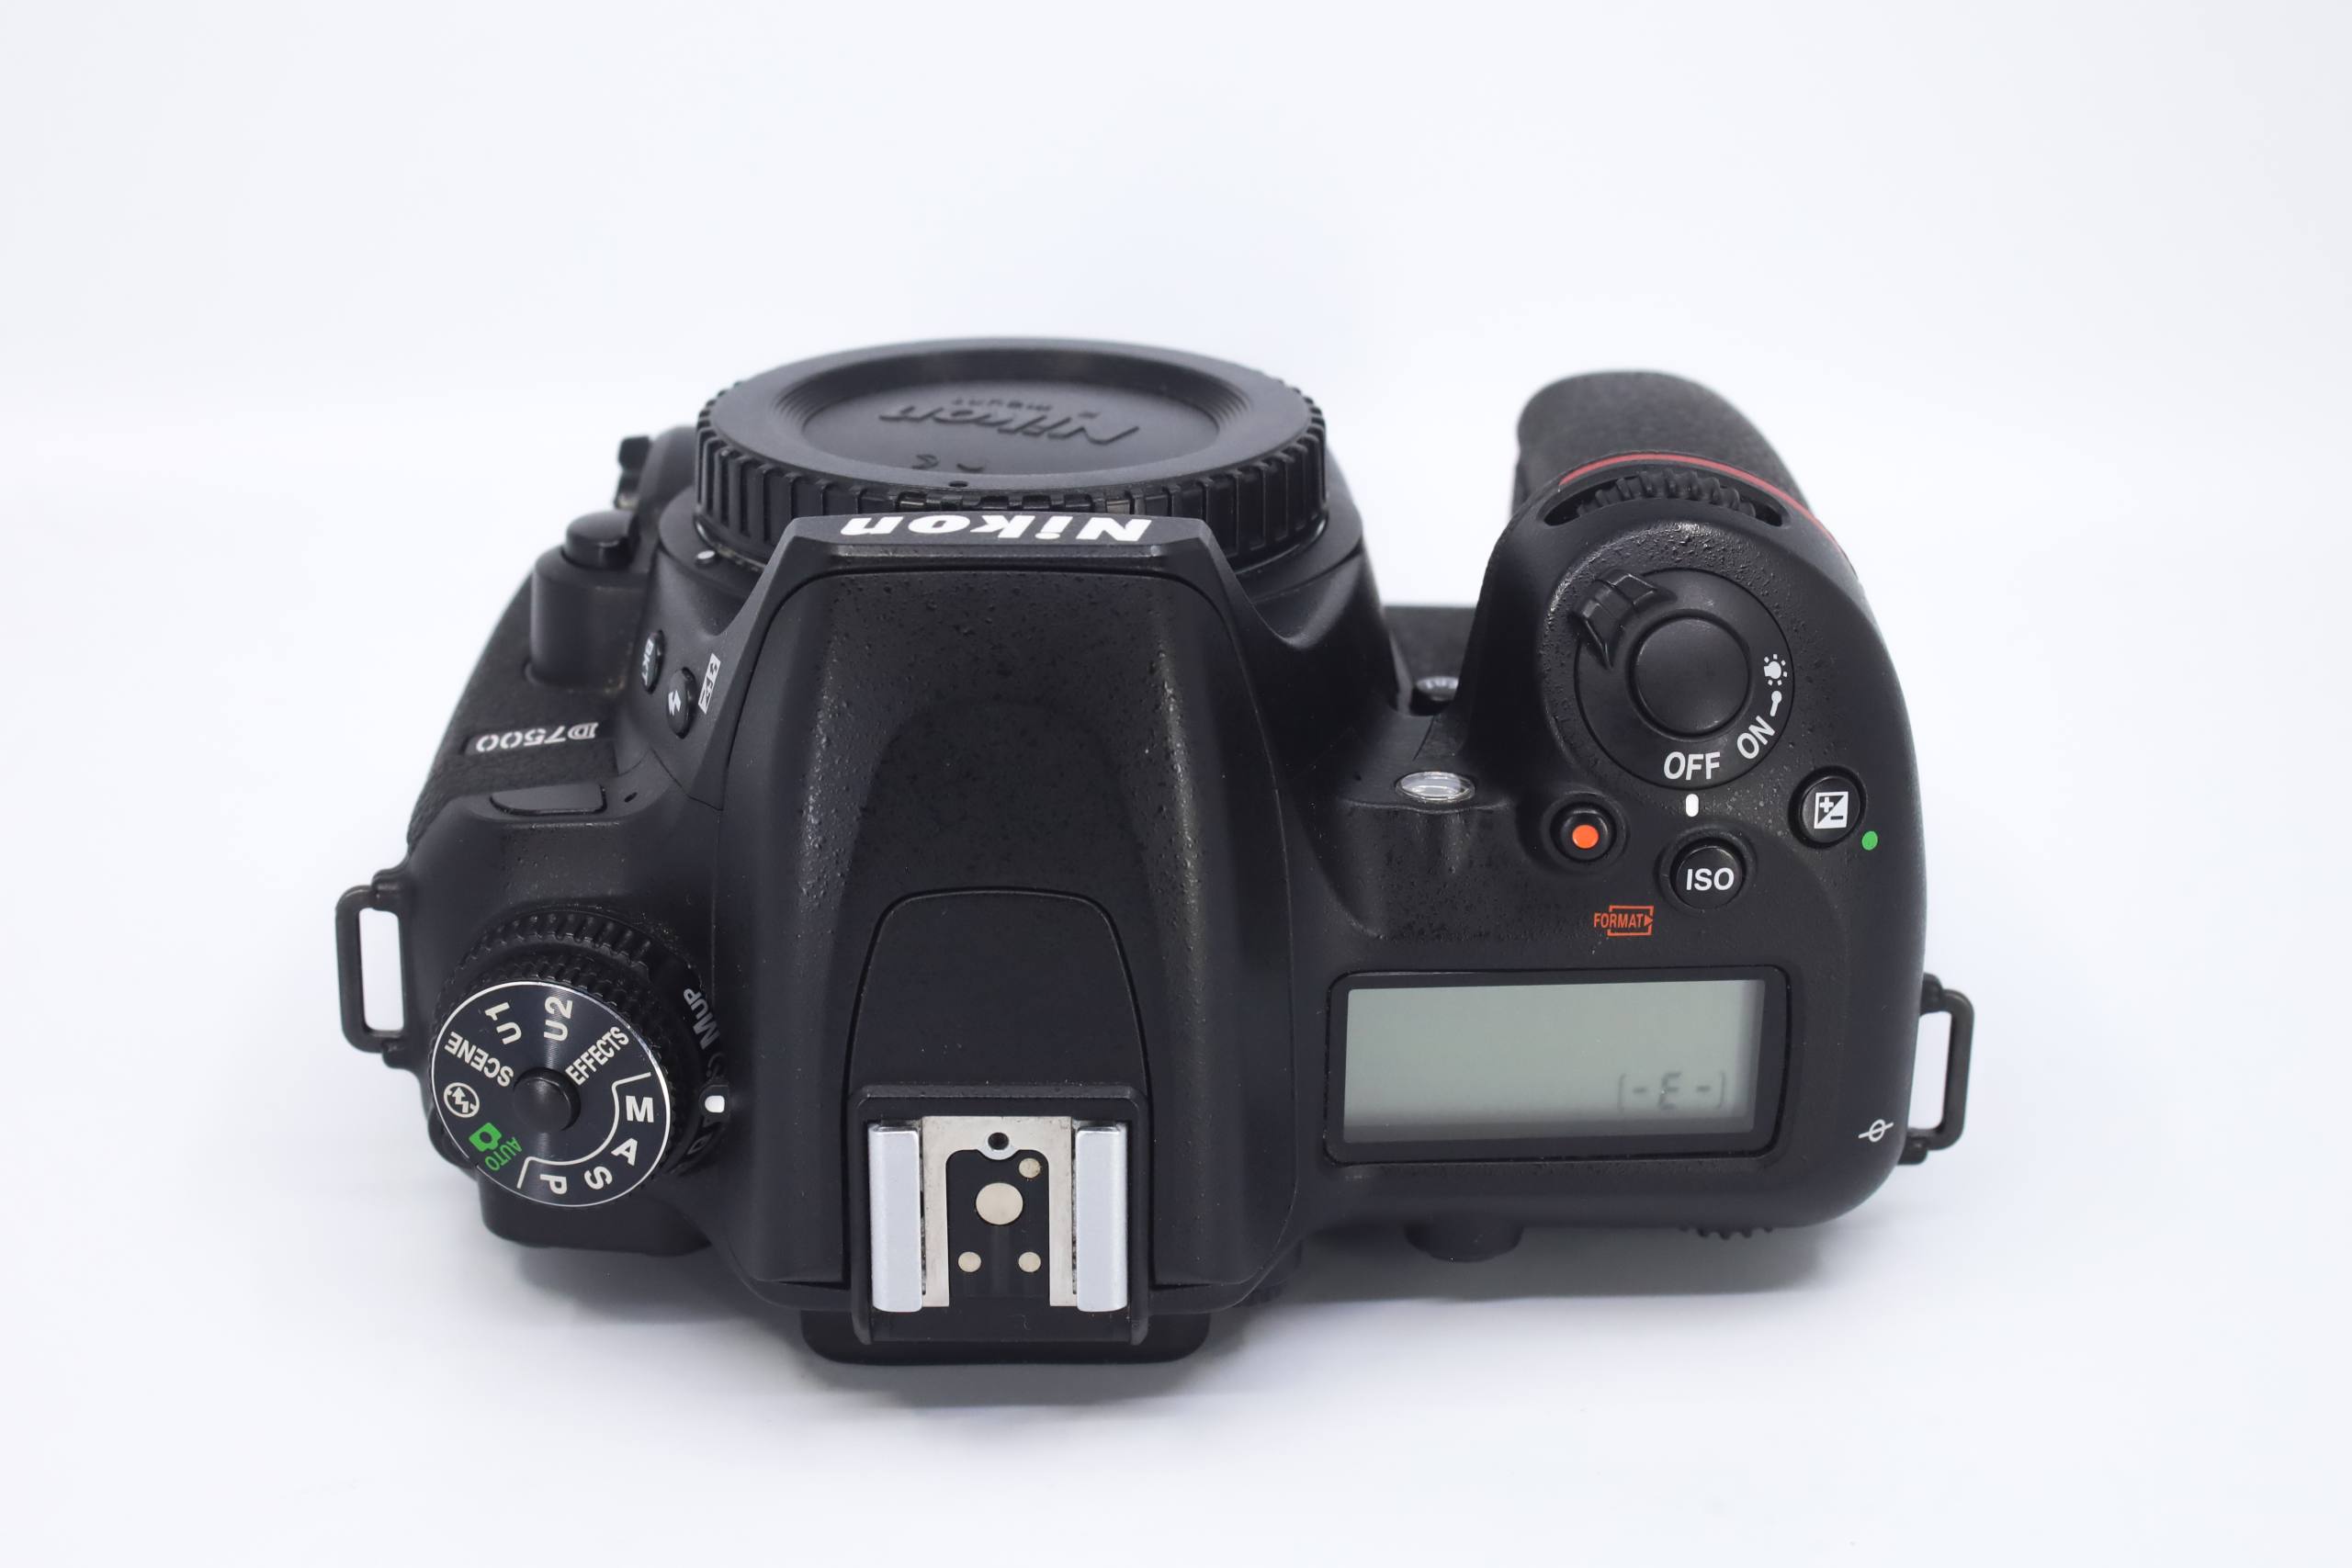 Cámara Nikon D7500